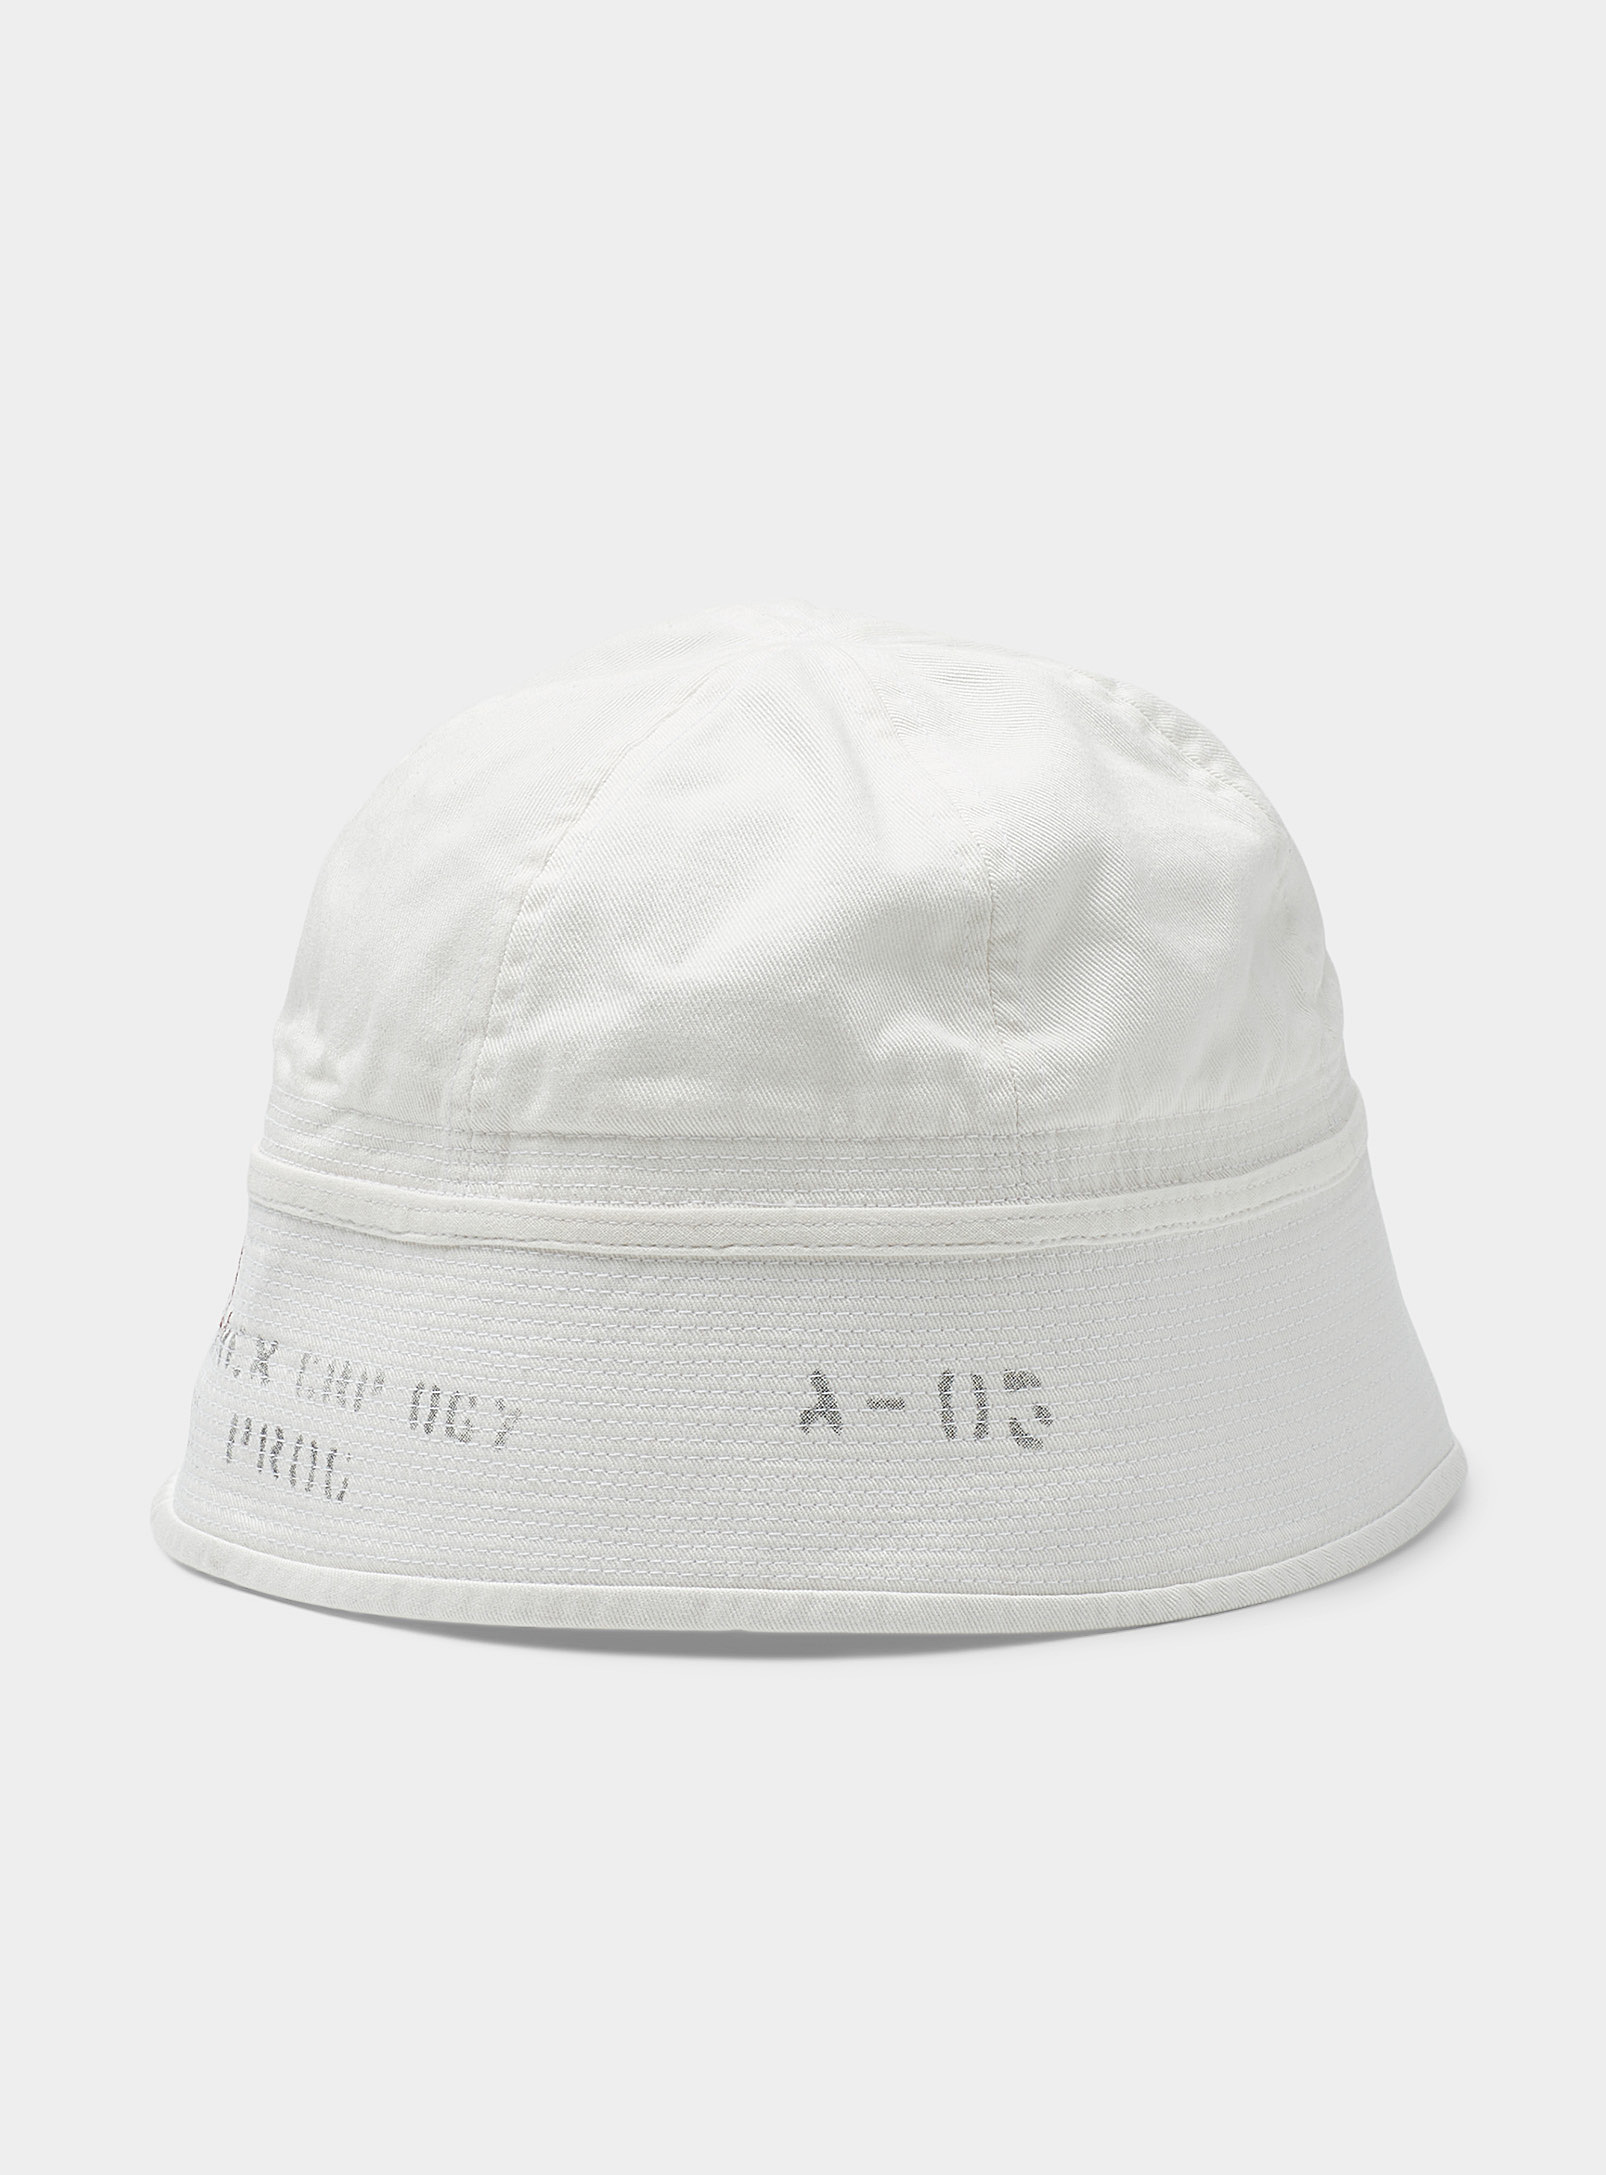 Polo Ralph Lauren - Men's Nautical-inspired pure cotton bucket hat